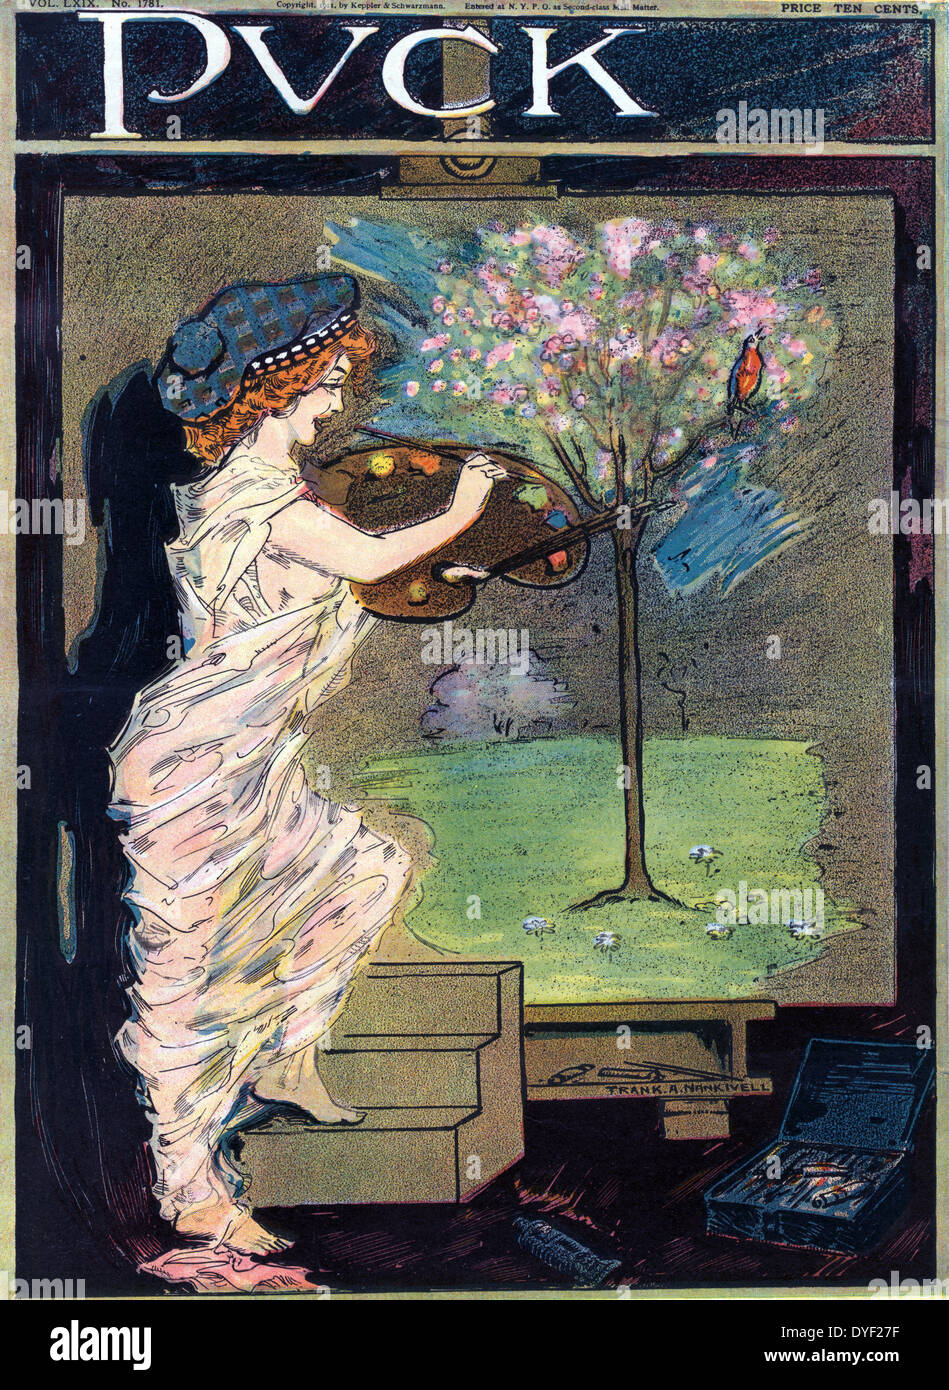 Miss Frühling, Künstler von Frank A. Nankivell, 1869-1959, Künstler 1911. Abbildung zeigt Frühling als Künstlerin in einem durchscheinenden Material umwickelt, malen ein Baum mit Blüten und ein Vogel auf einer großen Leinwand. Stockfoto